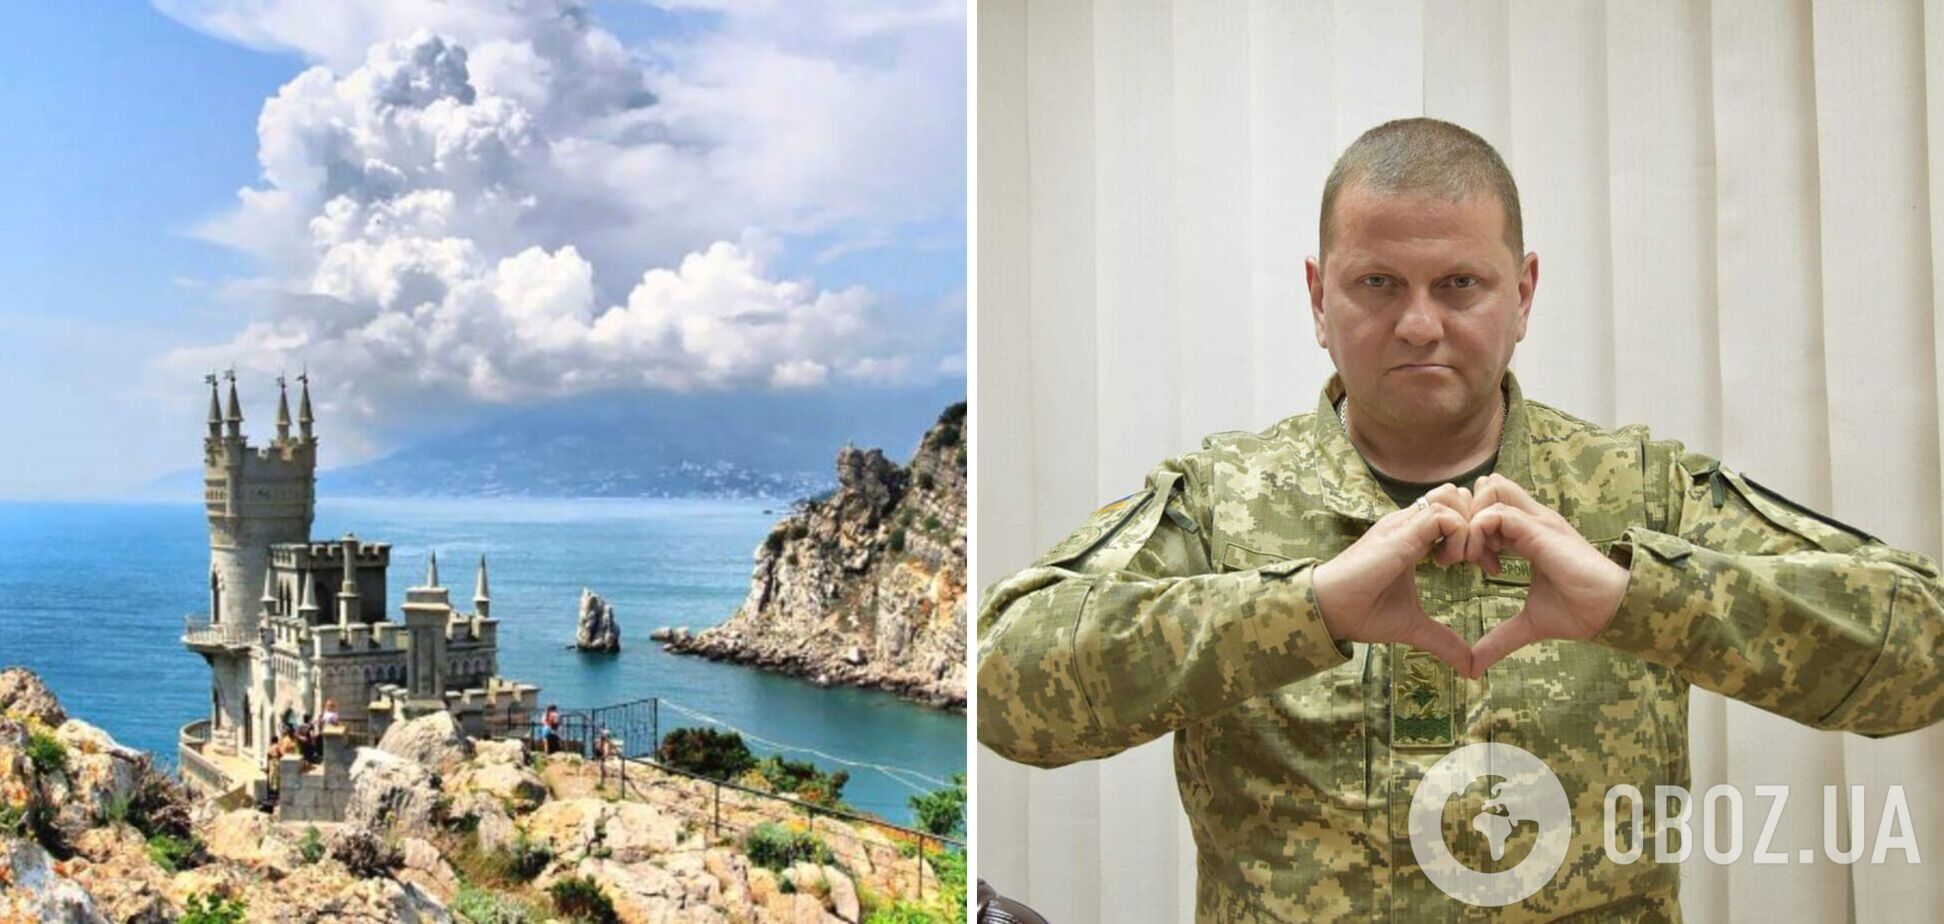 Гостиница в Ялте забронировала номер на имя Залужного для празднования деоккупации Крыма